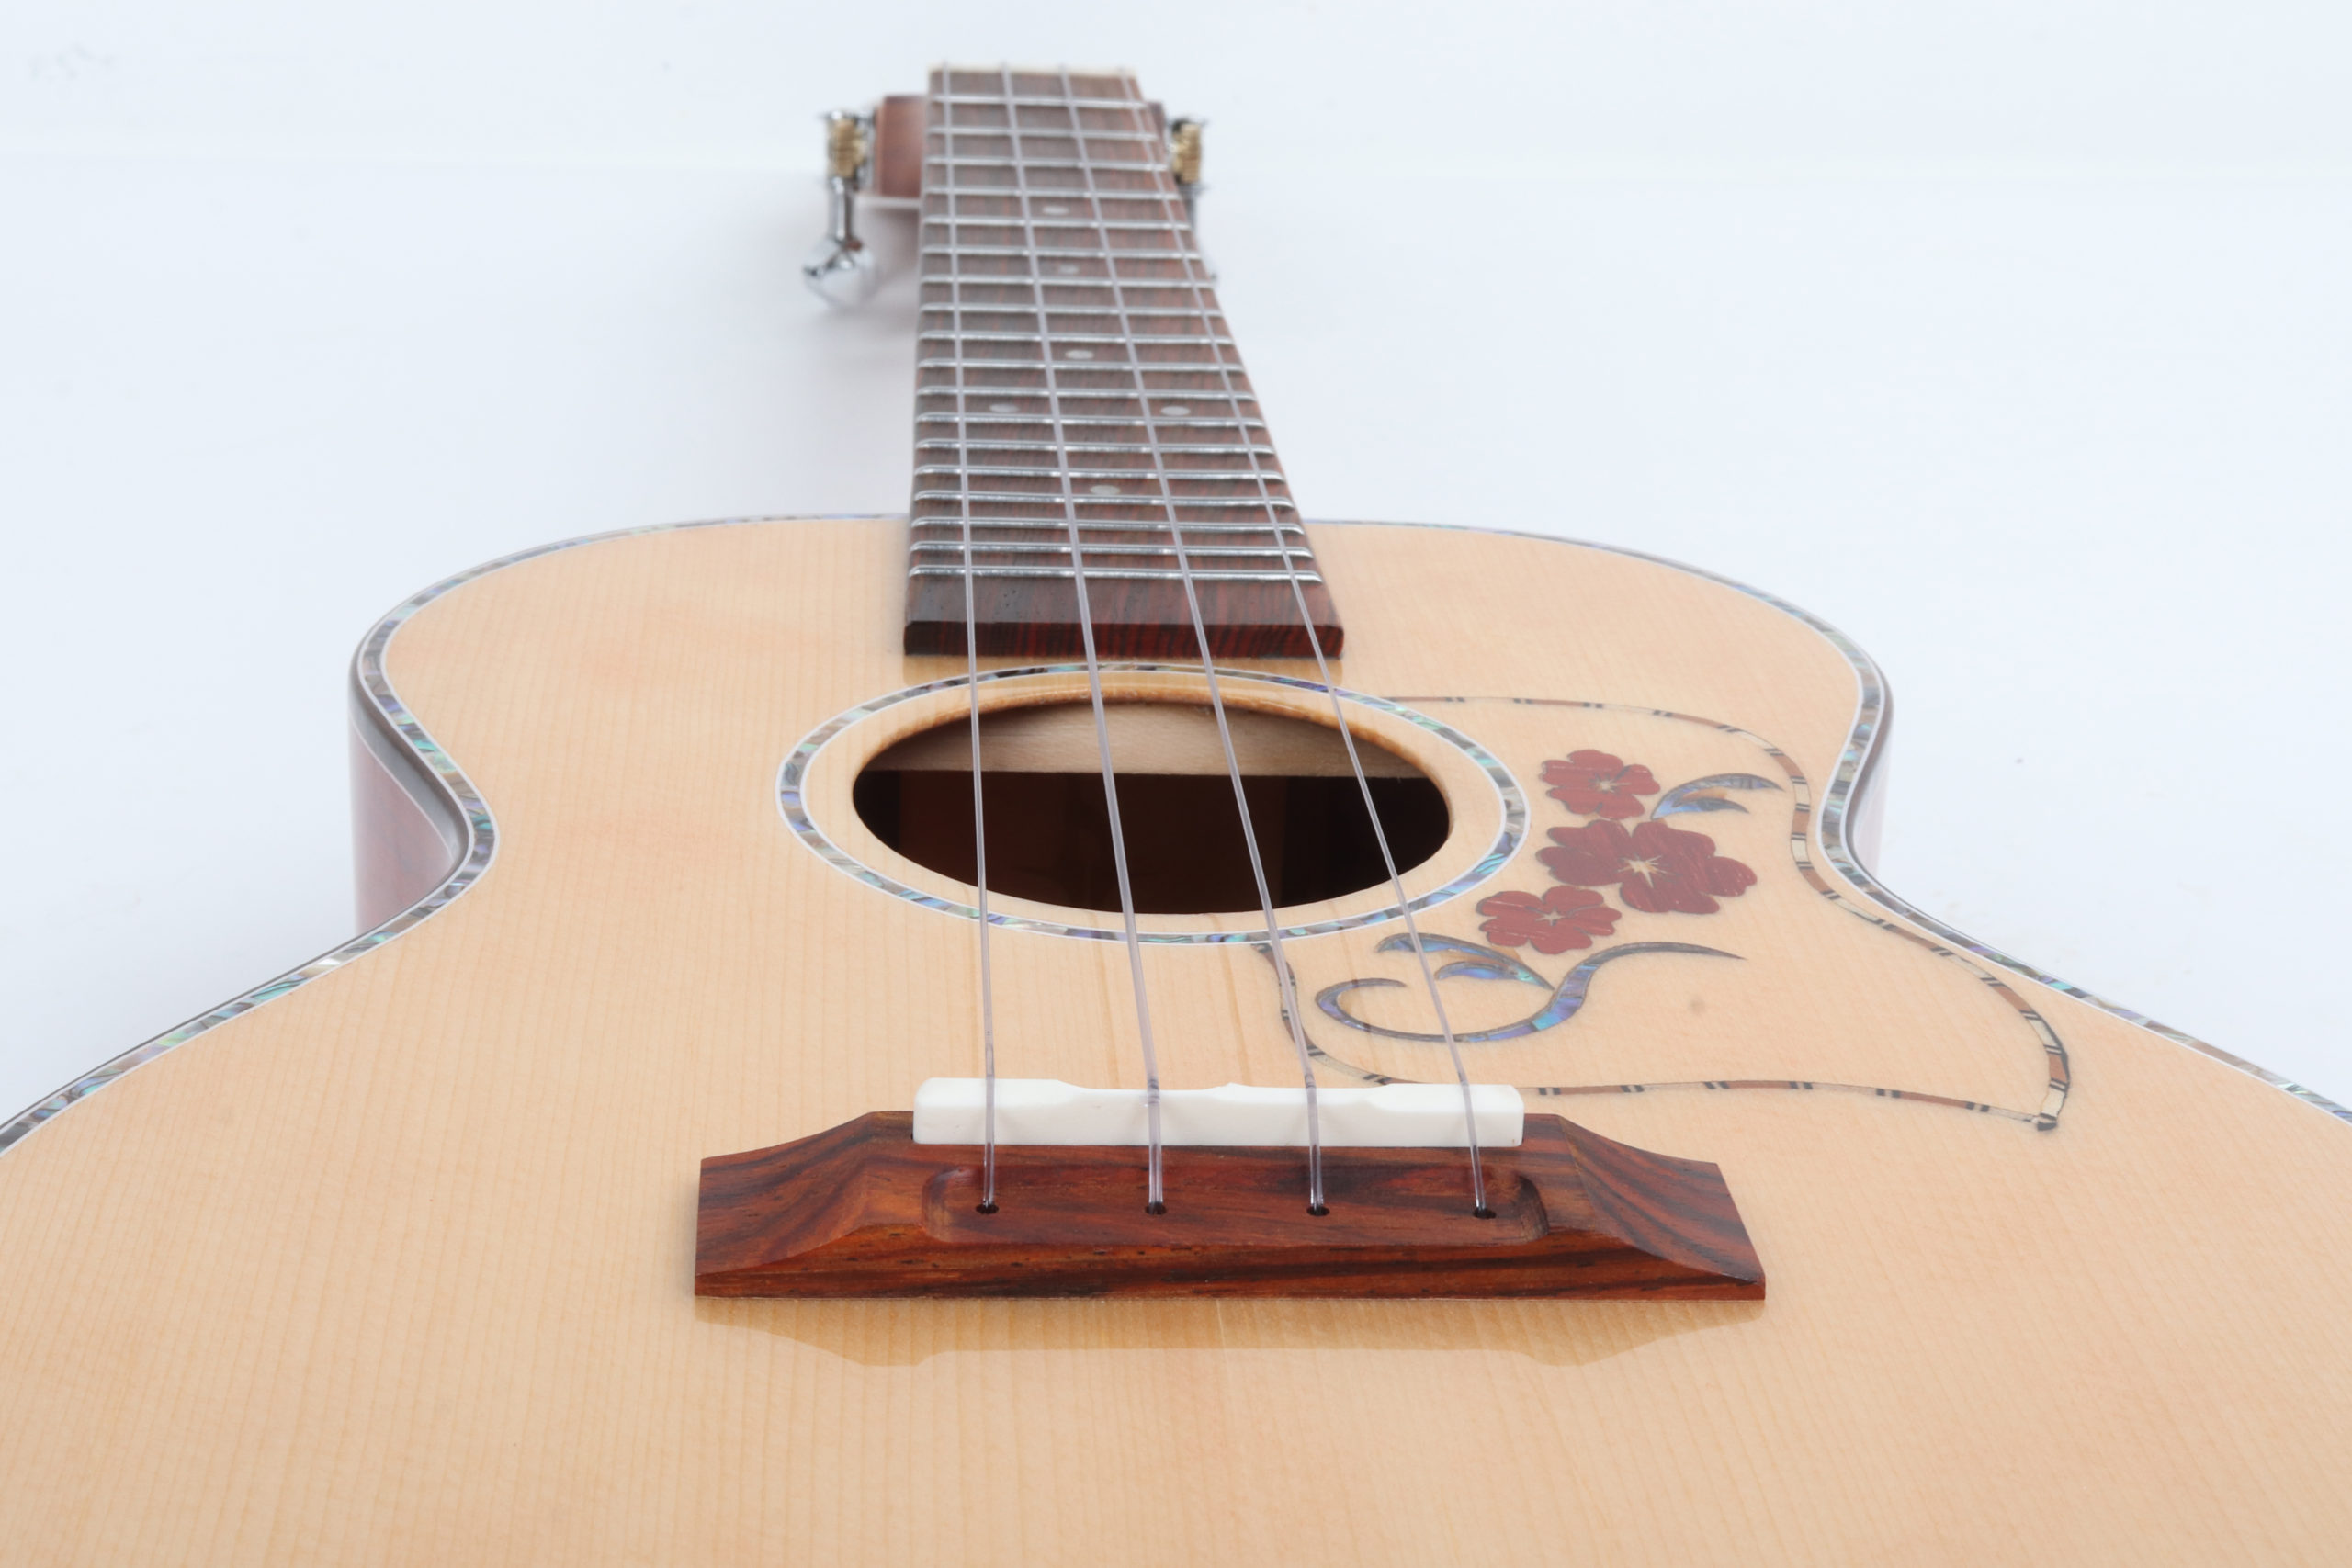 cocobolo ukulele tenor